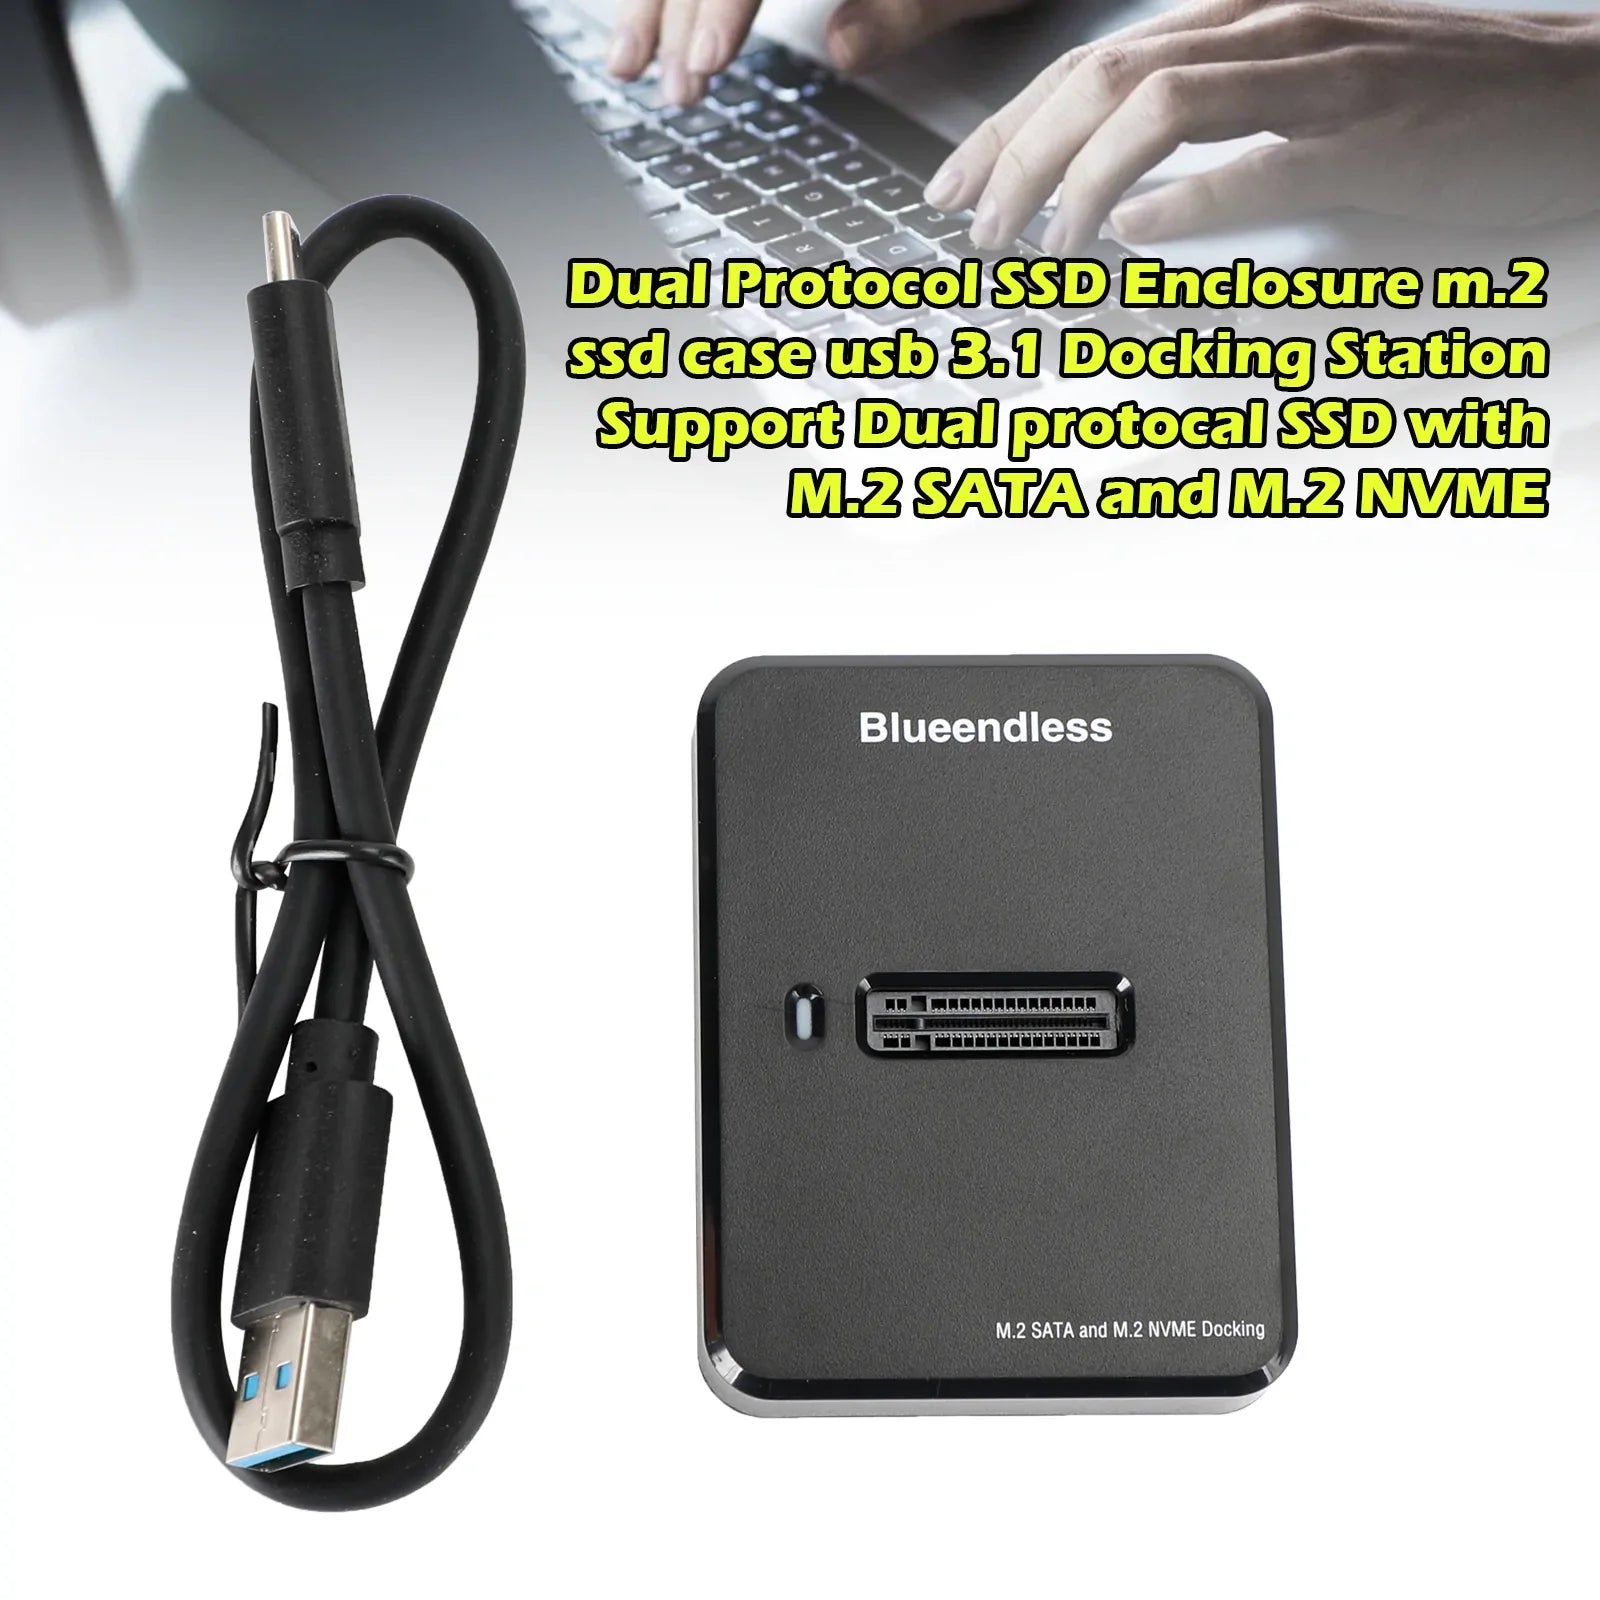 Compatible con estación de acoplamiento SSD USB3.1 de protocolo dual con M.2 SATA y M.2 NVME